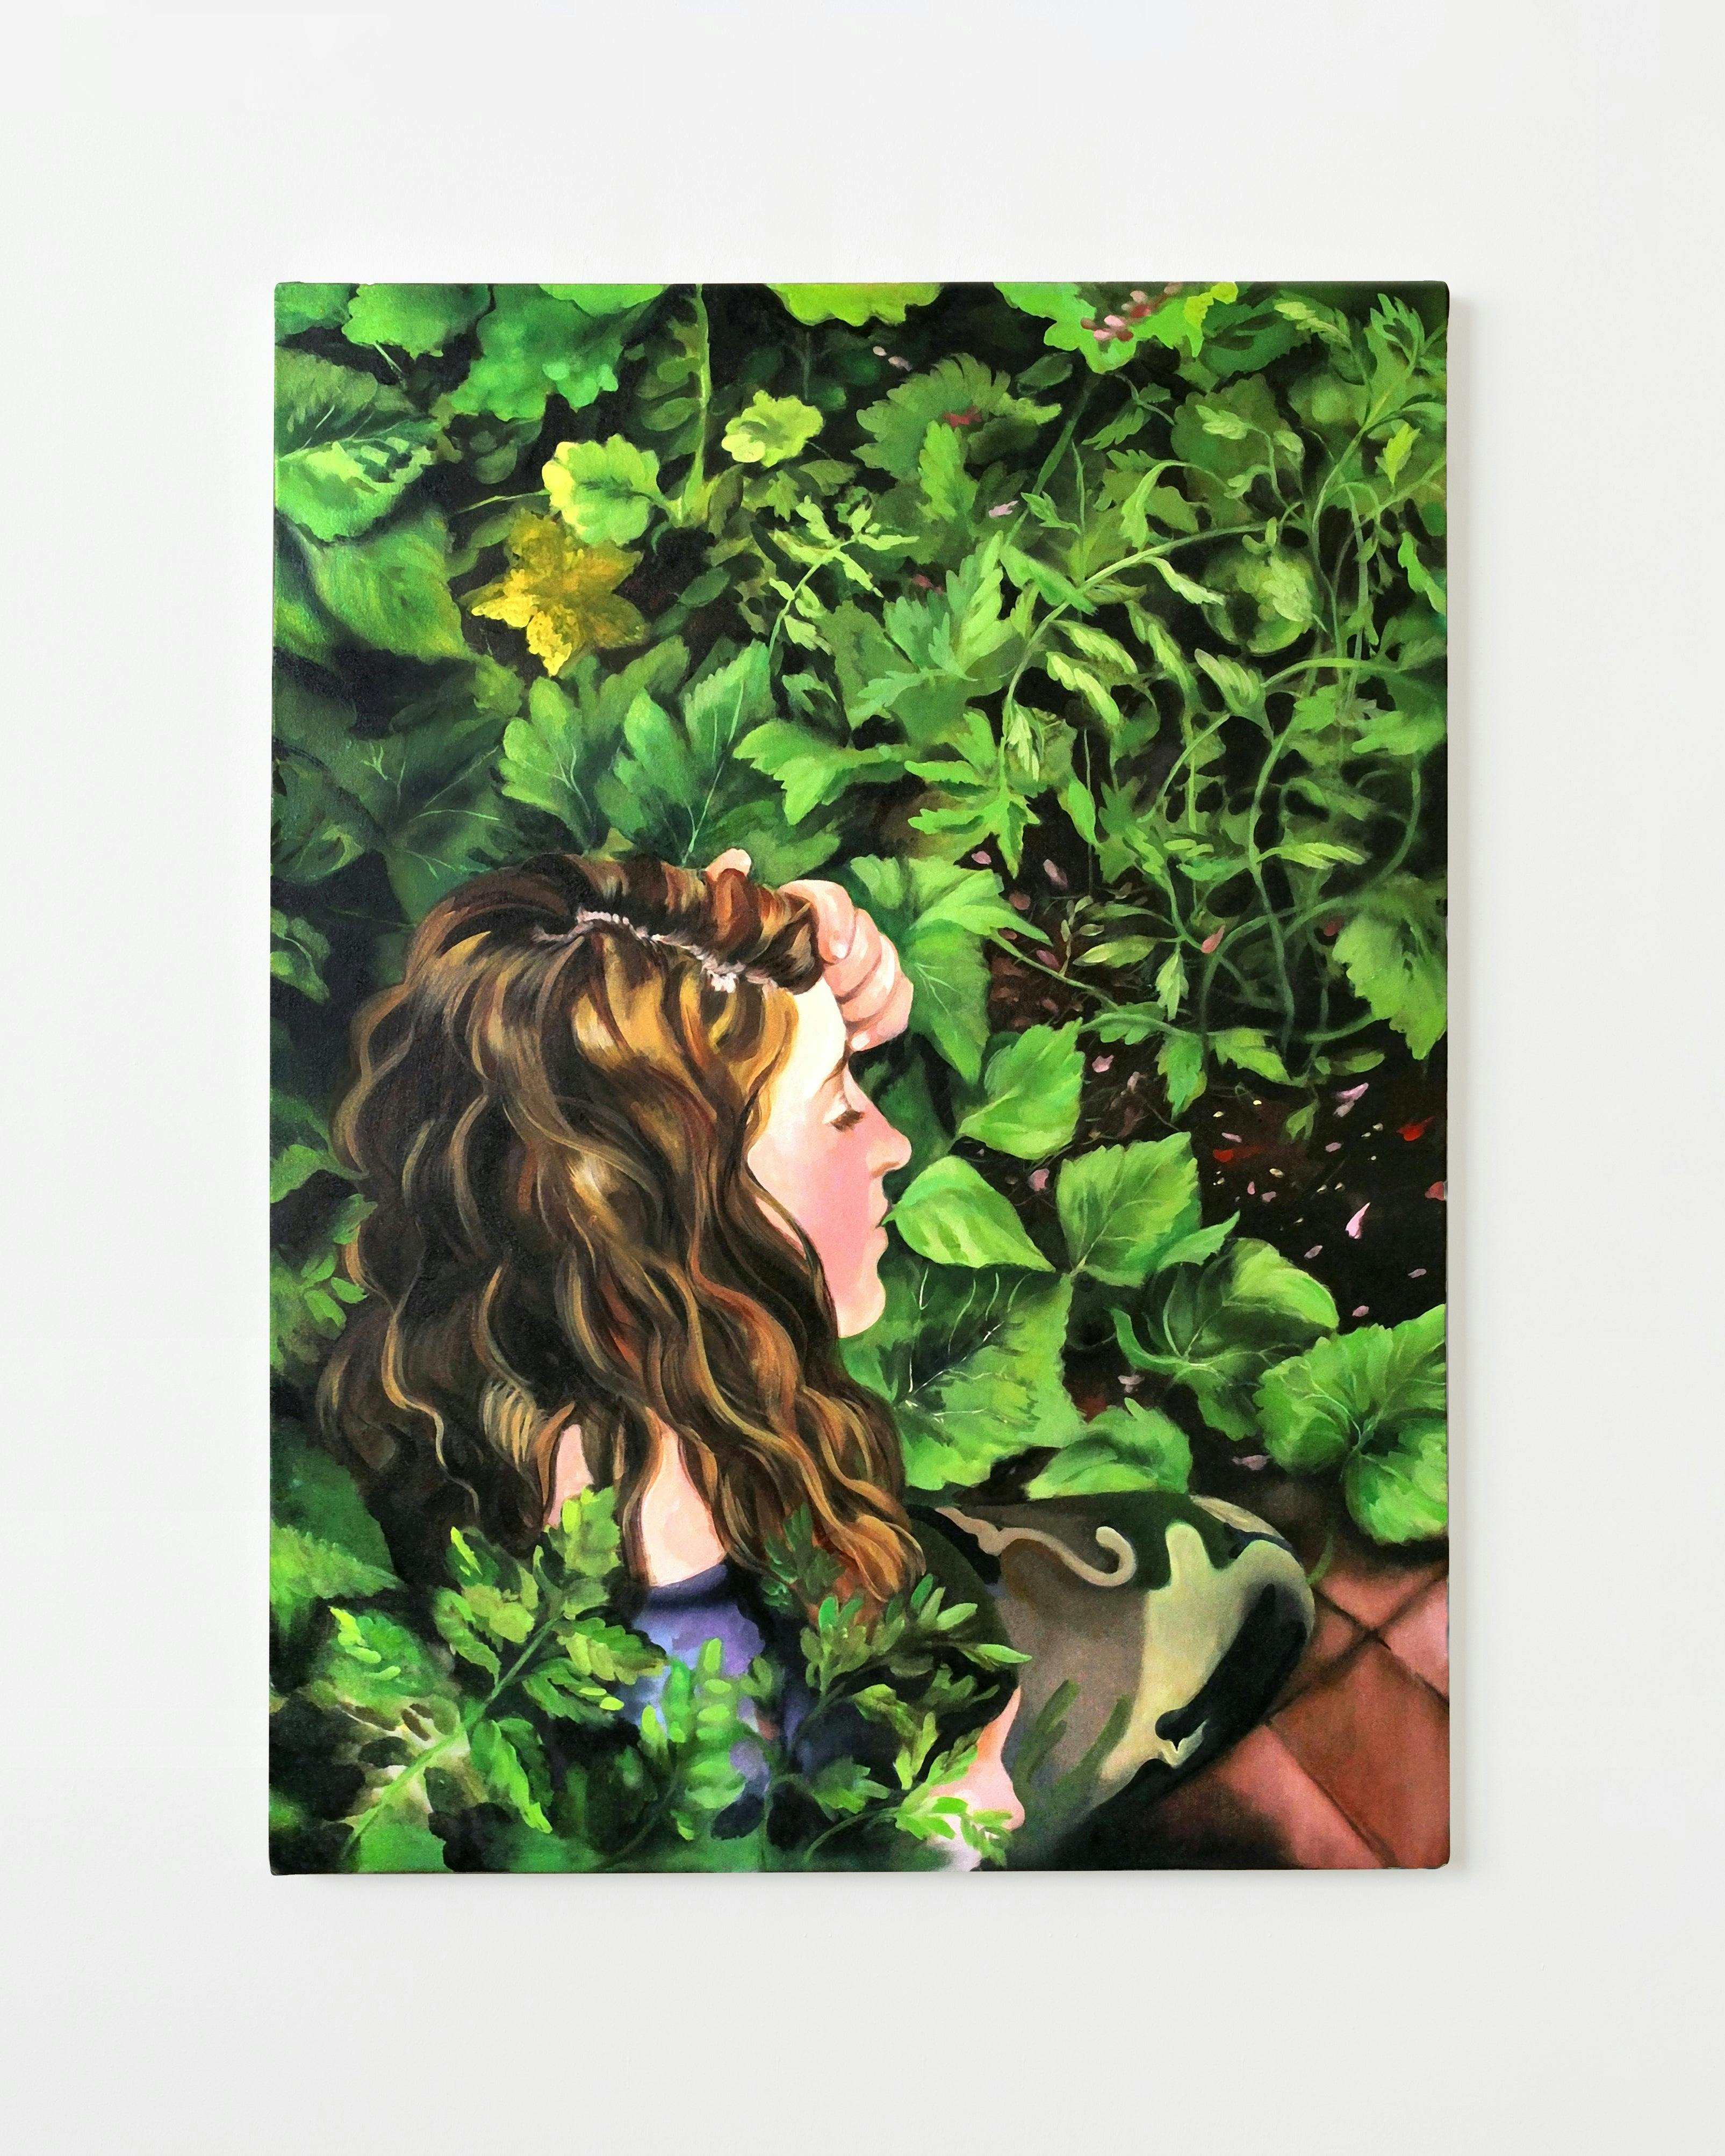 Painting by Nefertiti Jenkins titled "Jen in Mom's Garden".